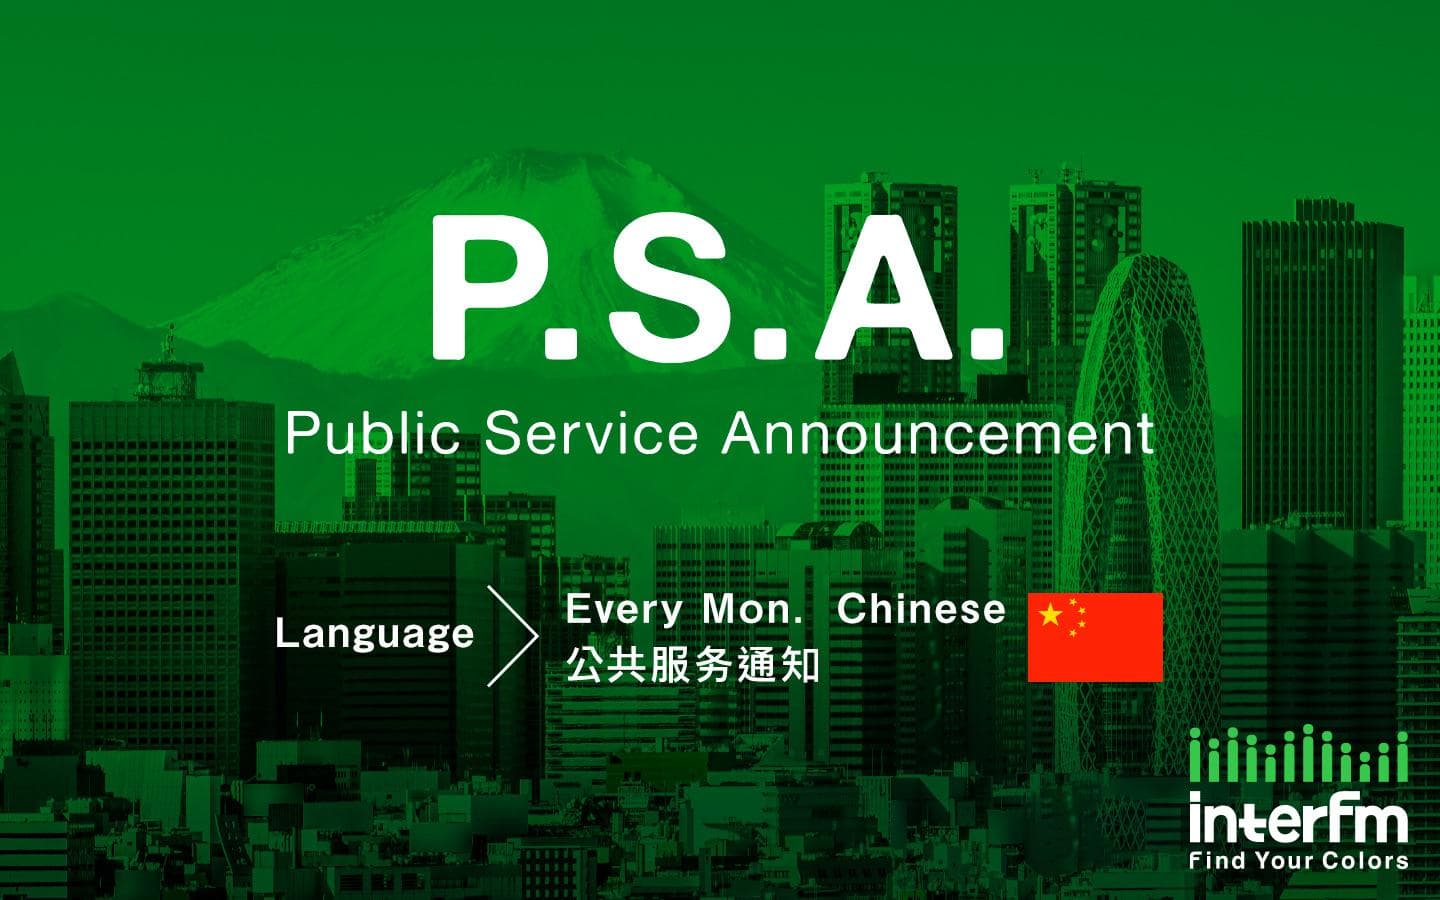 公共服务通知 - Public Service Announcement (中文 - Chinese)のヘッダー画像